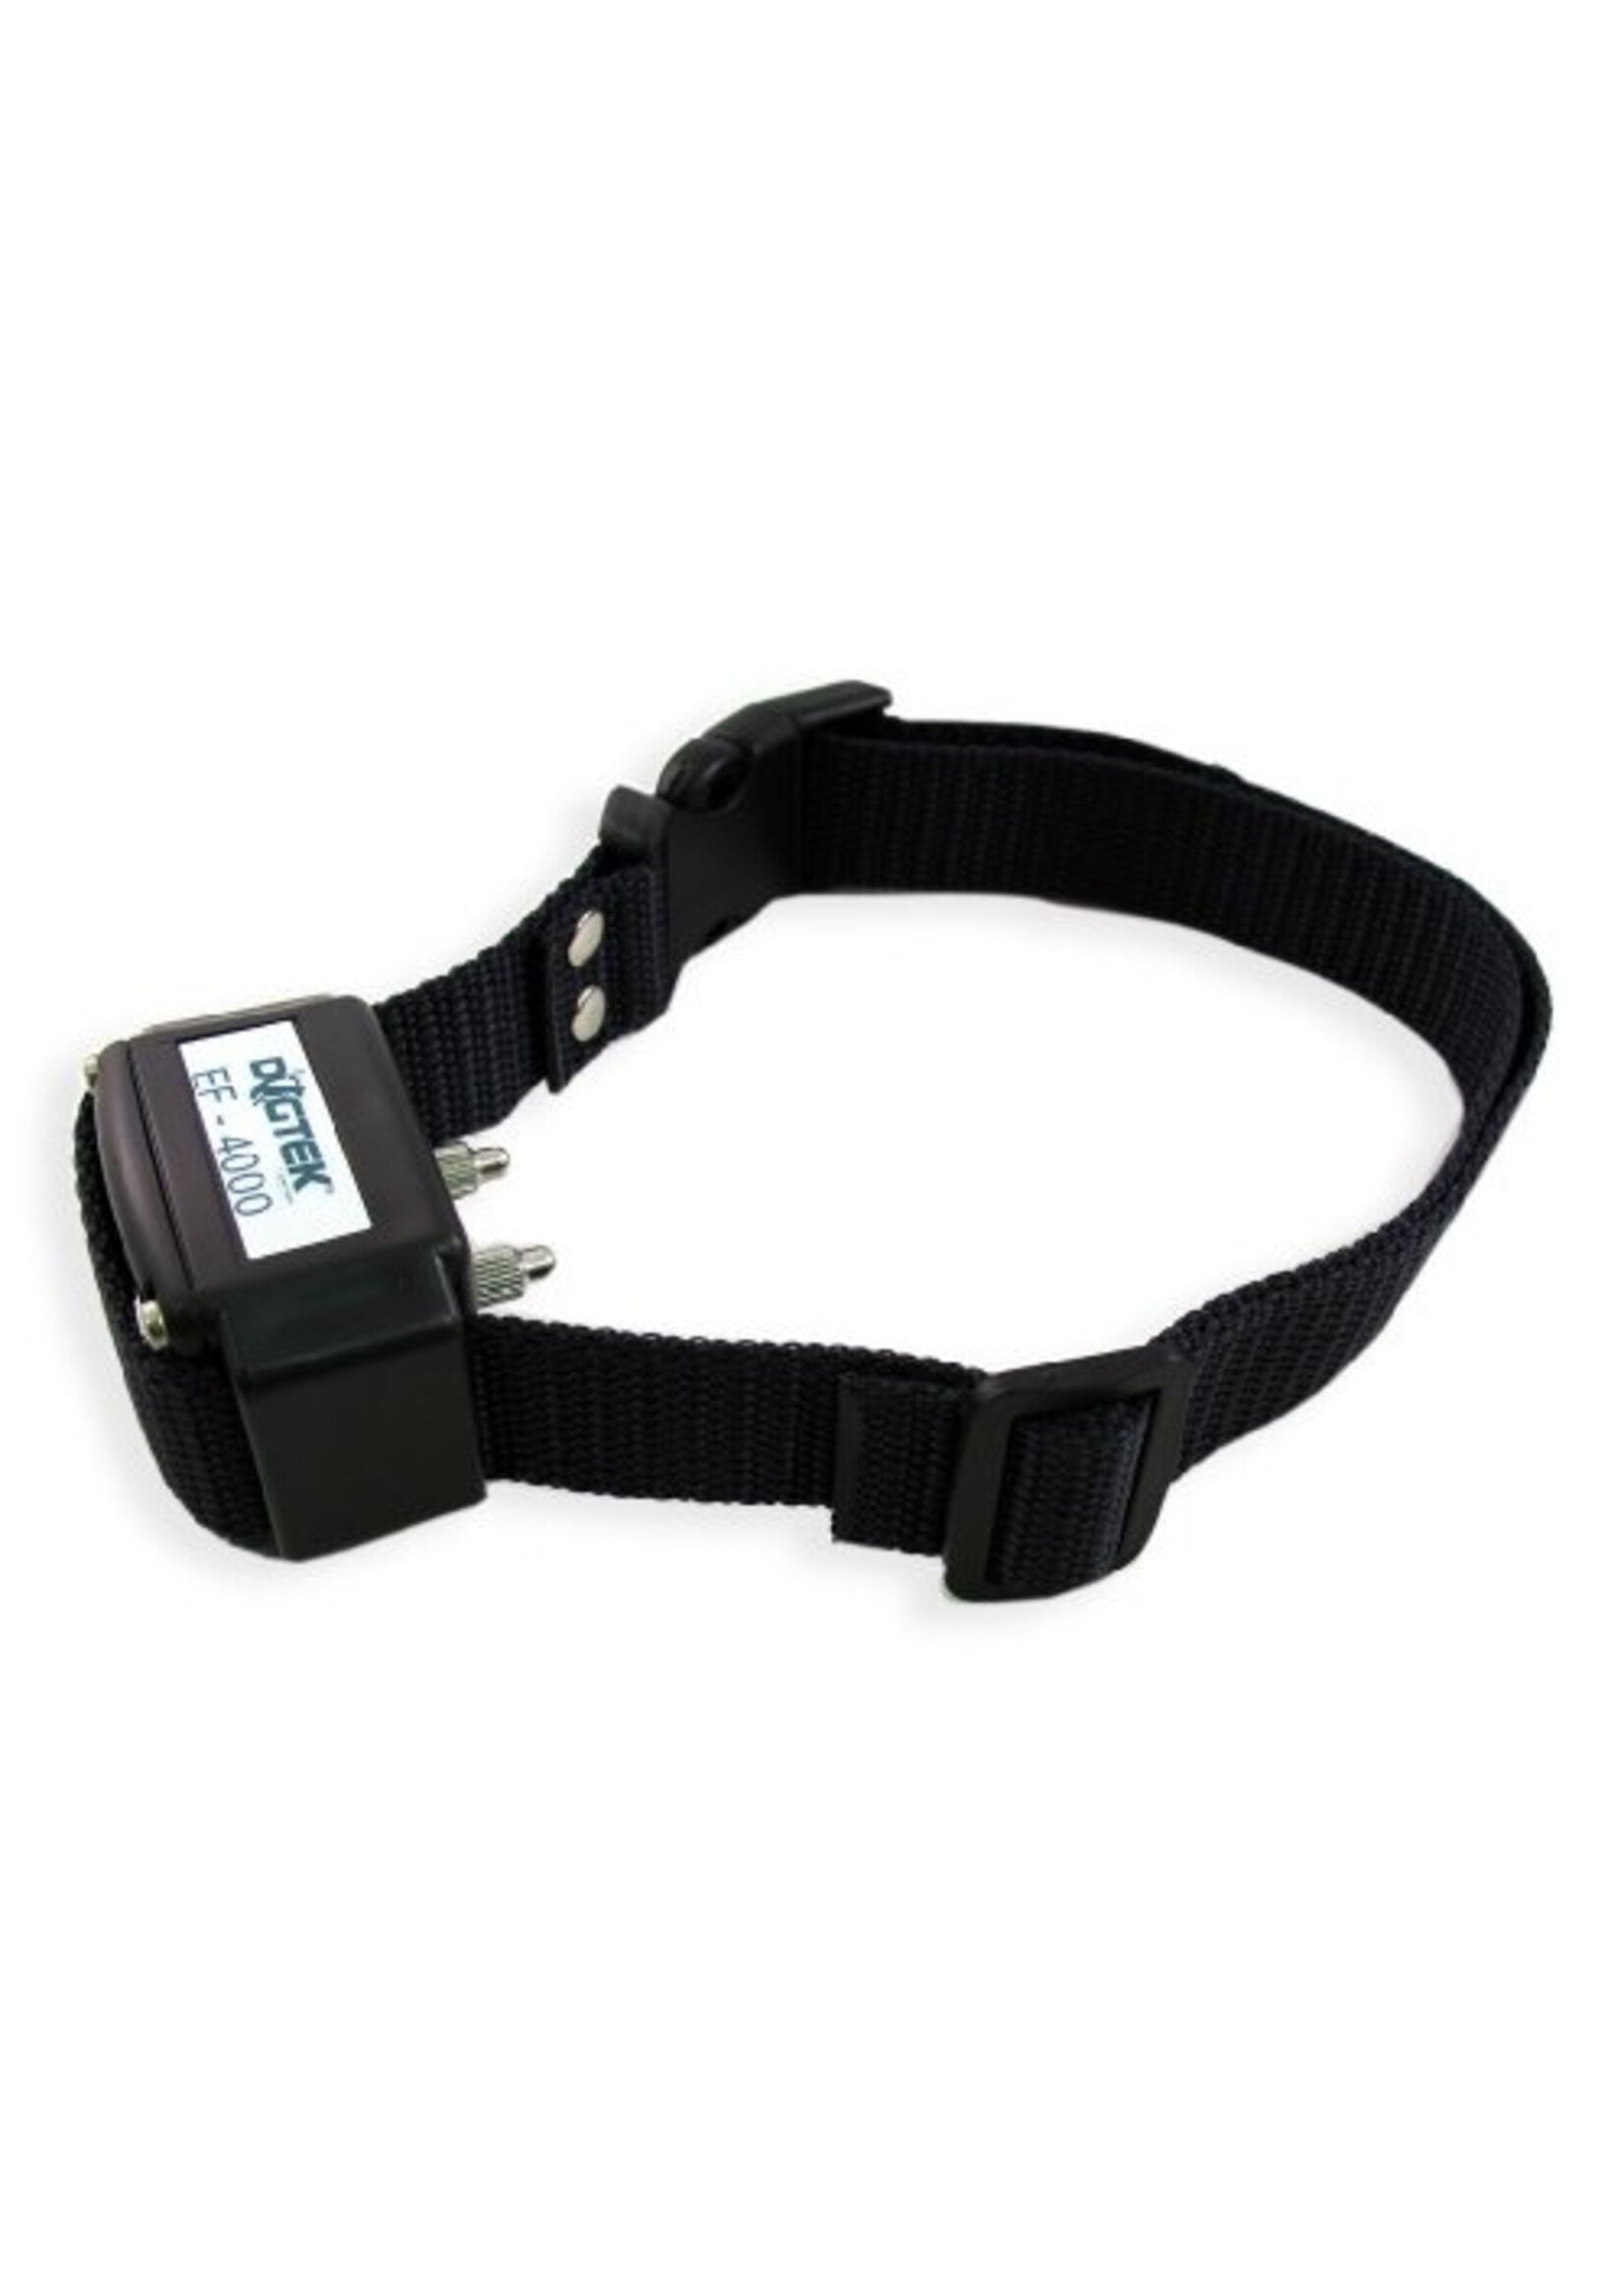 Dogtek Dogtek Electronic Receiver Collar EF-400